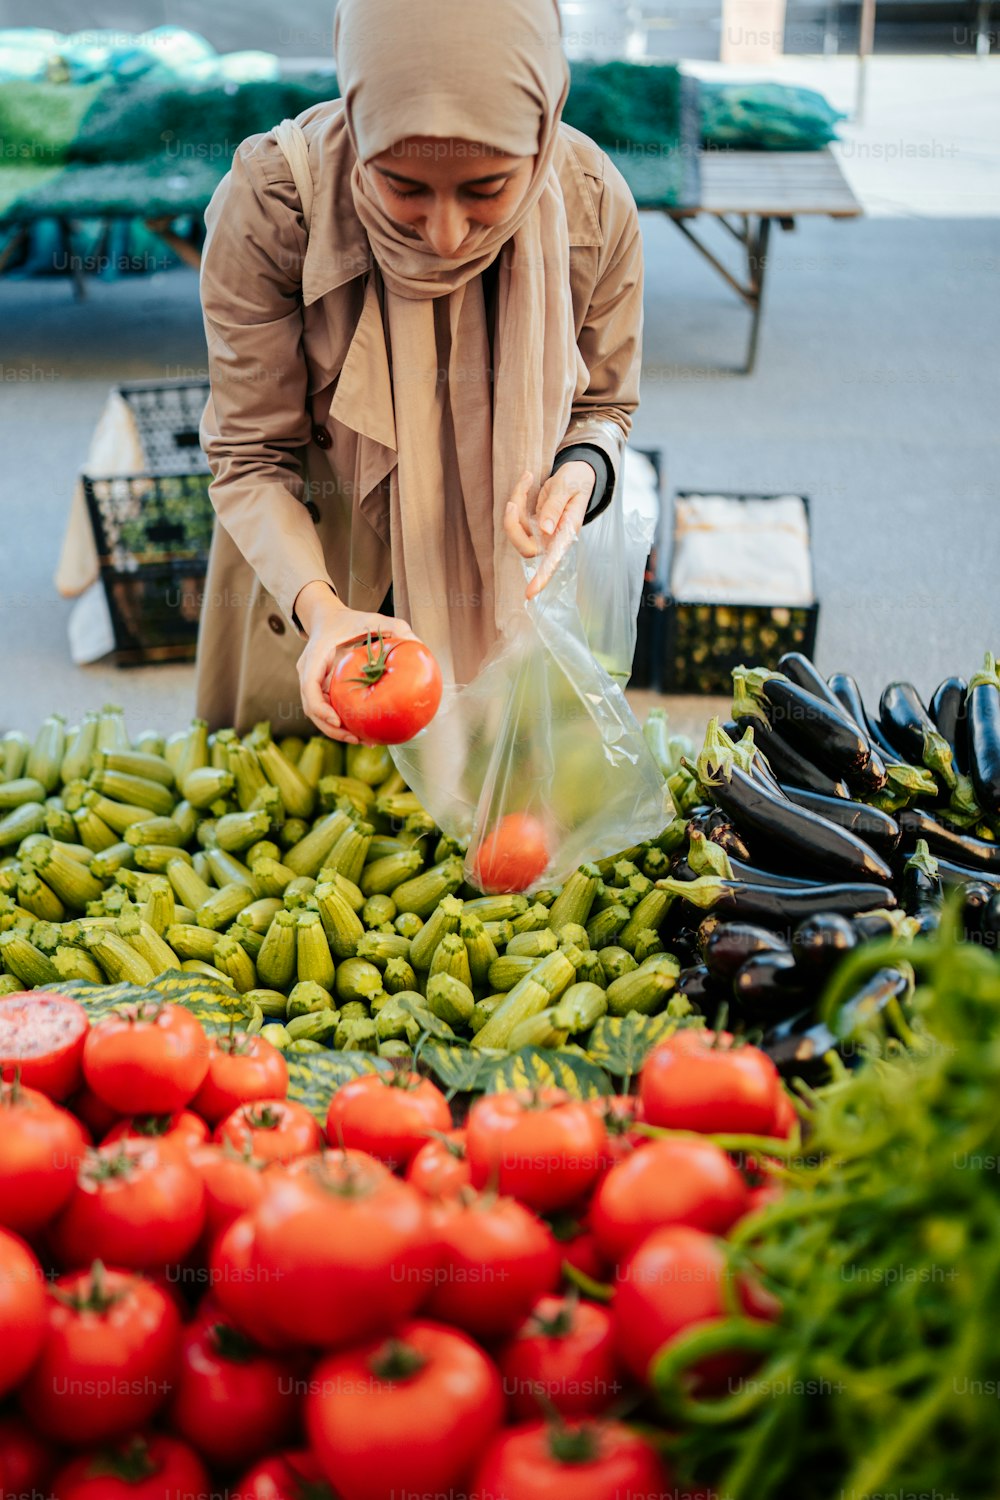 히잡을 쓴 여자가 야채를 쇼핑하고 있다